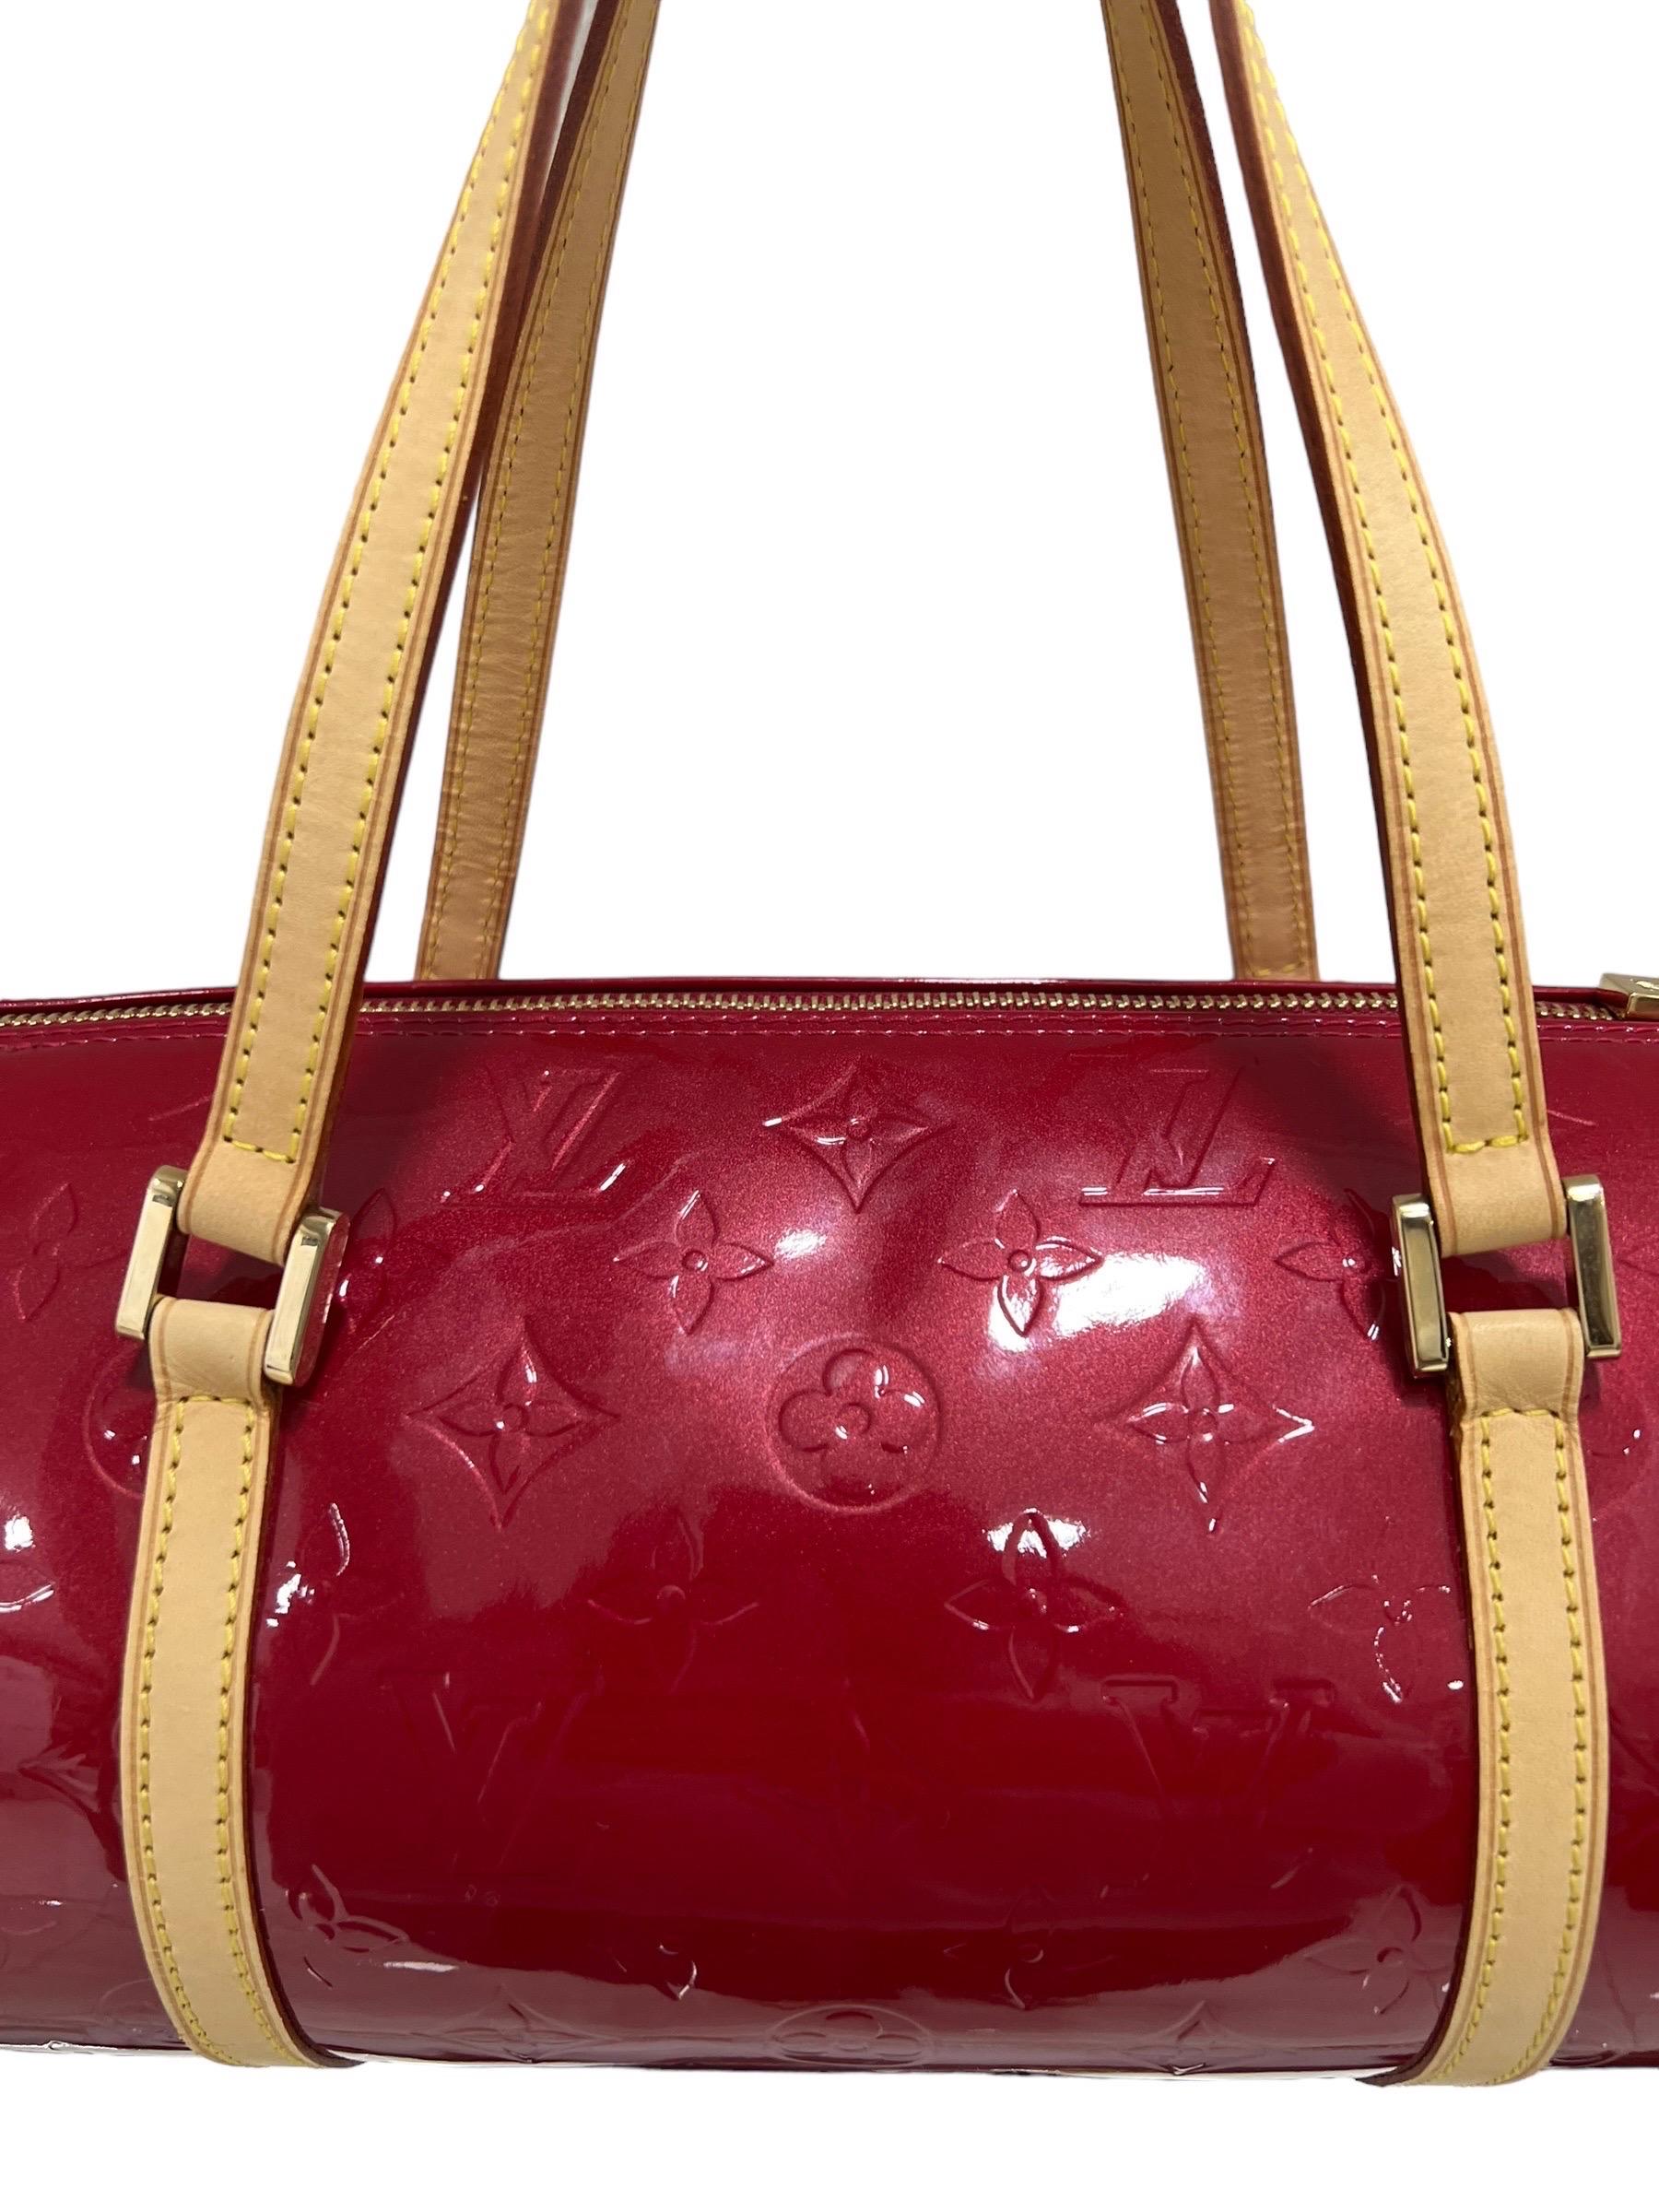 Borsa firmata Louis Vuitton, modello Papillon, misura MM, realizzato in pelle verniciata rossa con rifiniture in vacchetta e hardware dorati. Dotato di una chiusura superiore con zip, internamente rivestito in pelle tono su tono, abbastanza